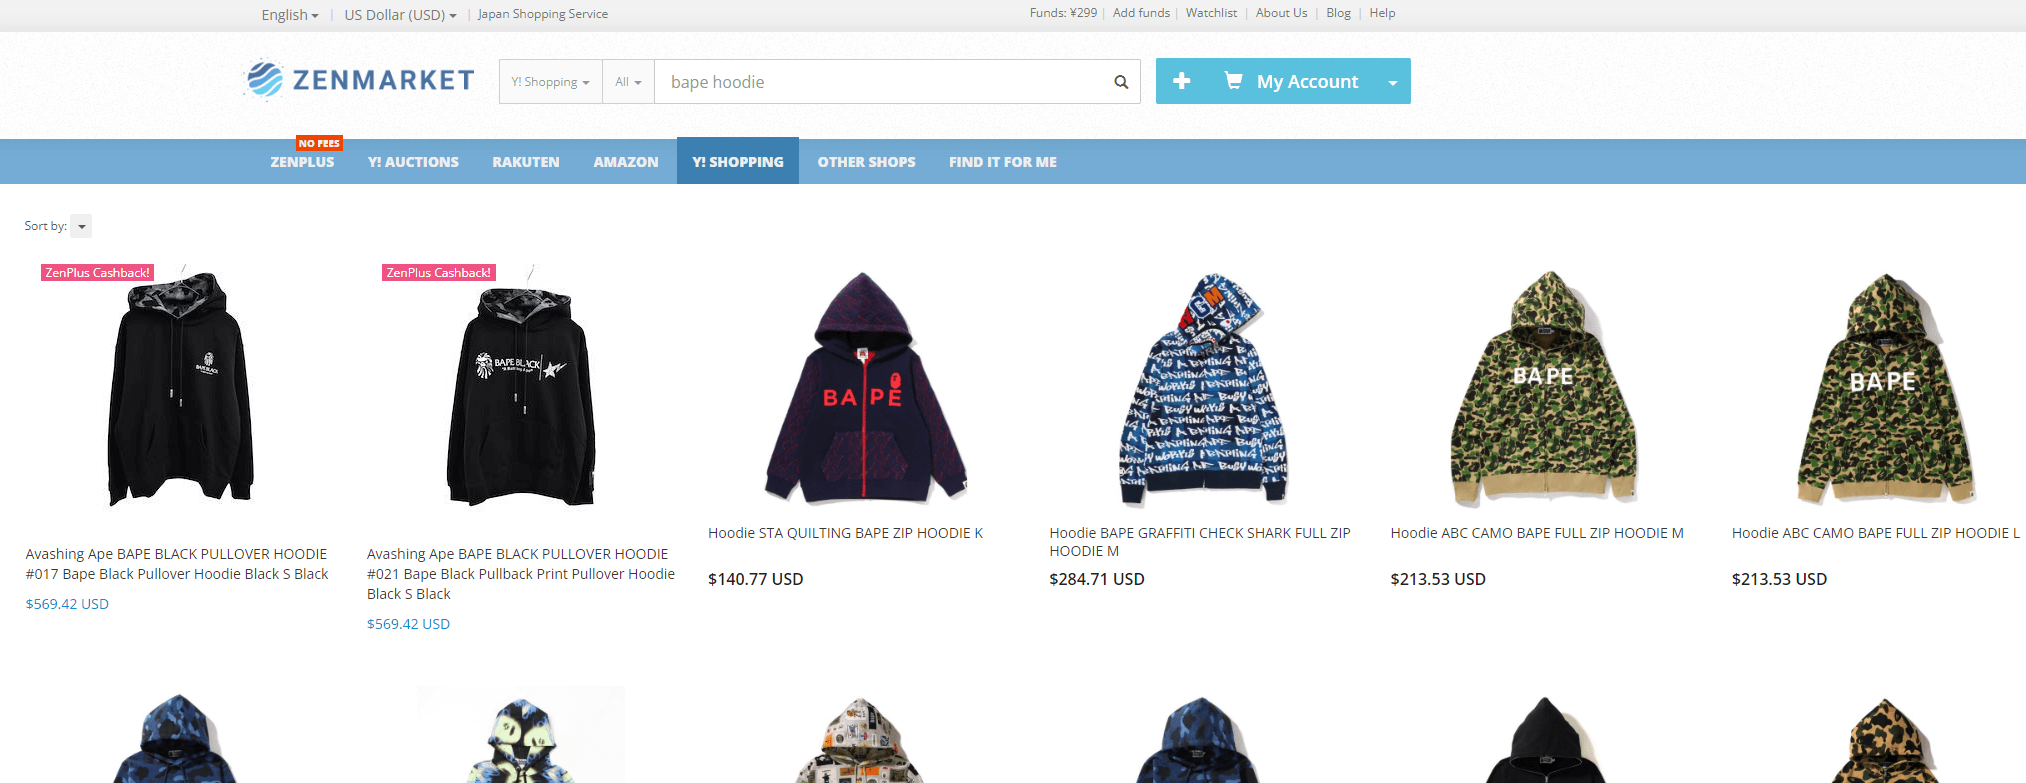 Bape hoodies on Yahoo shopping via zenmarket